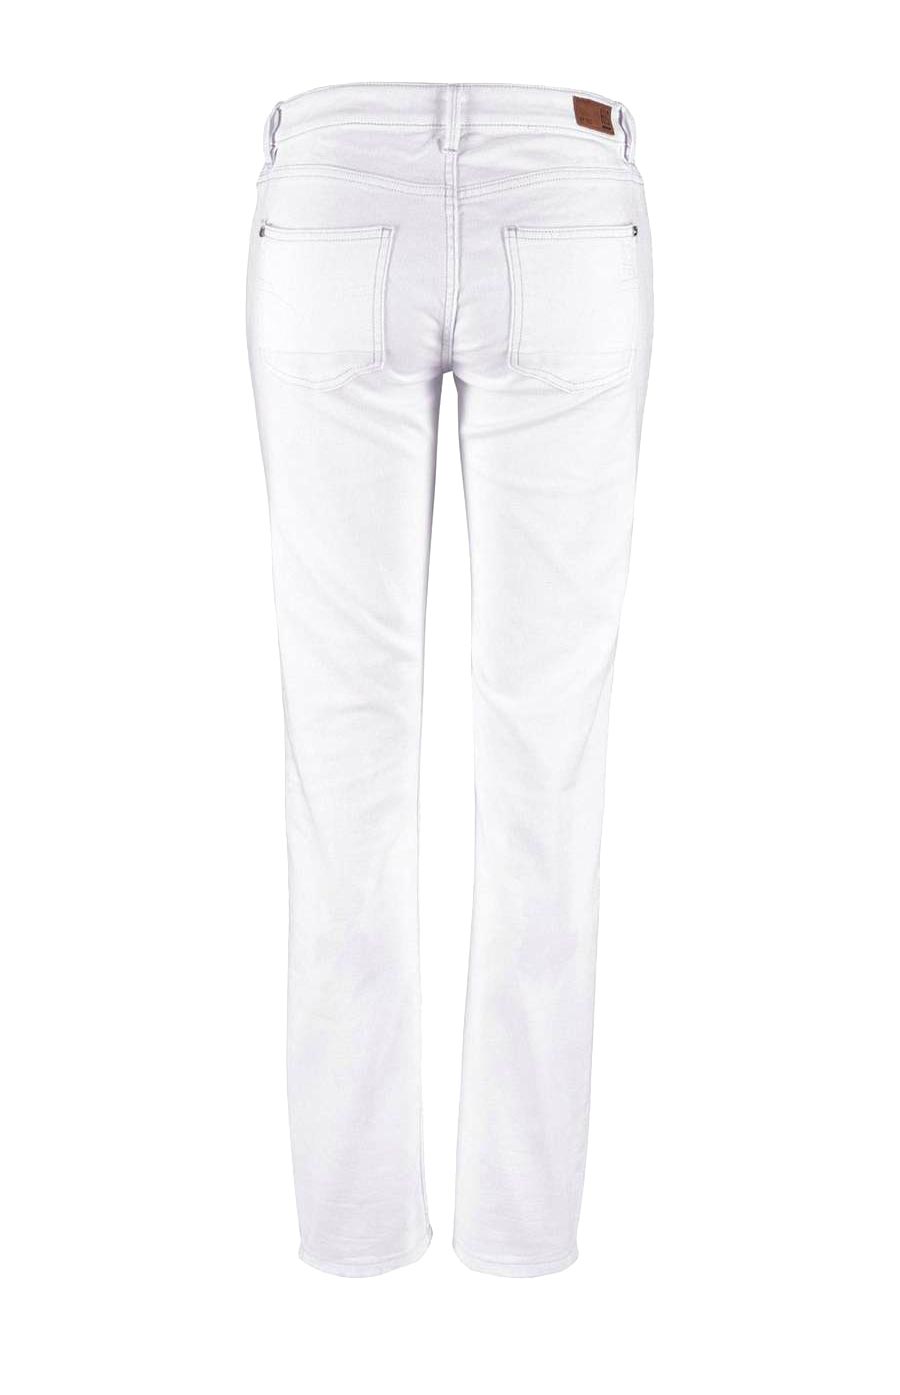 H.i.s. Damen Marken-Jeans "MONROE" mit Stickerei, weiß, 33 inch